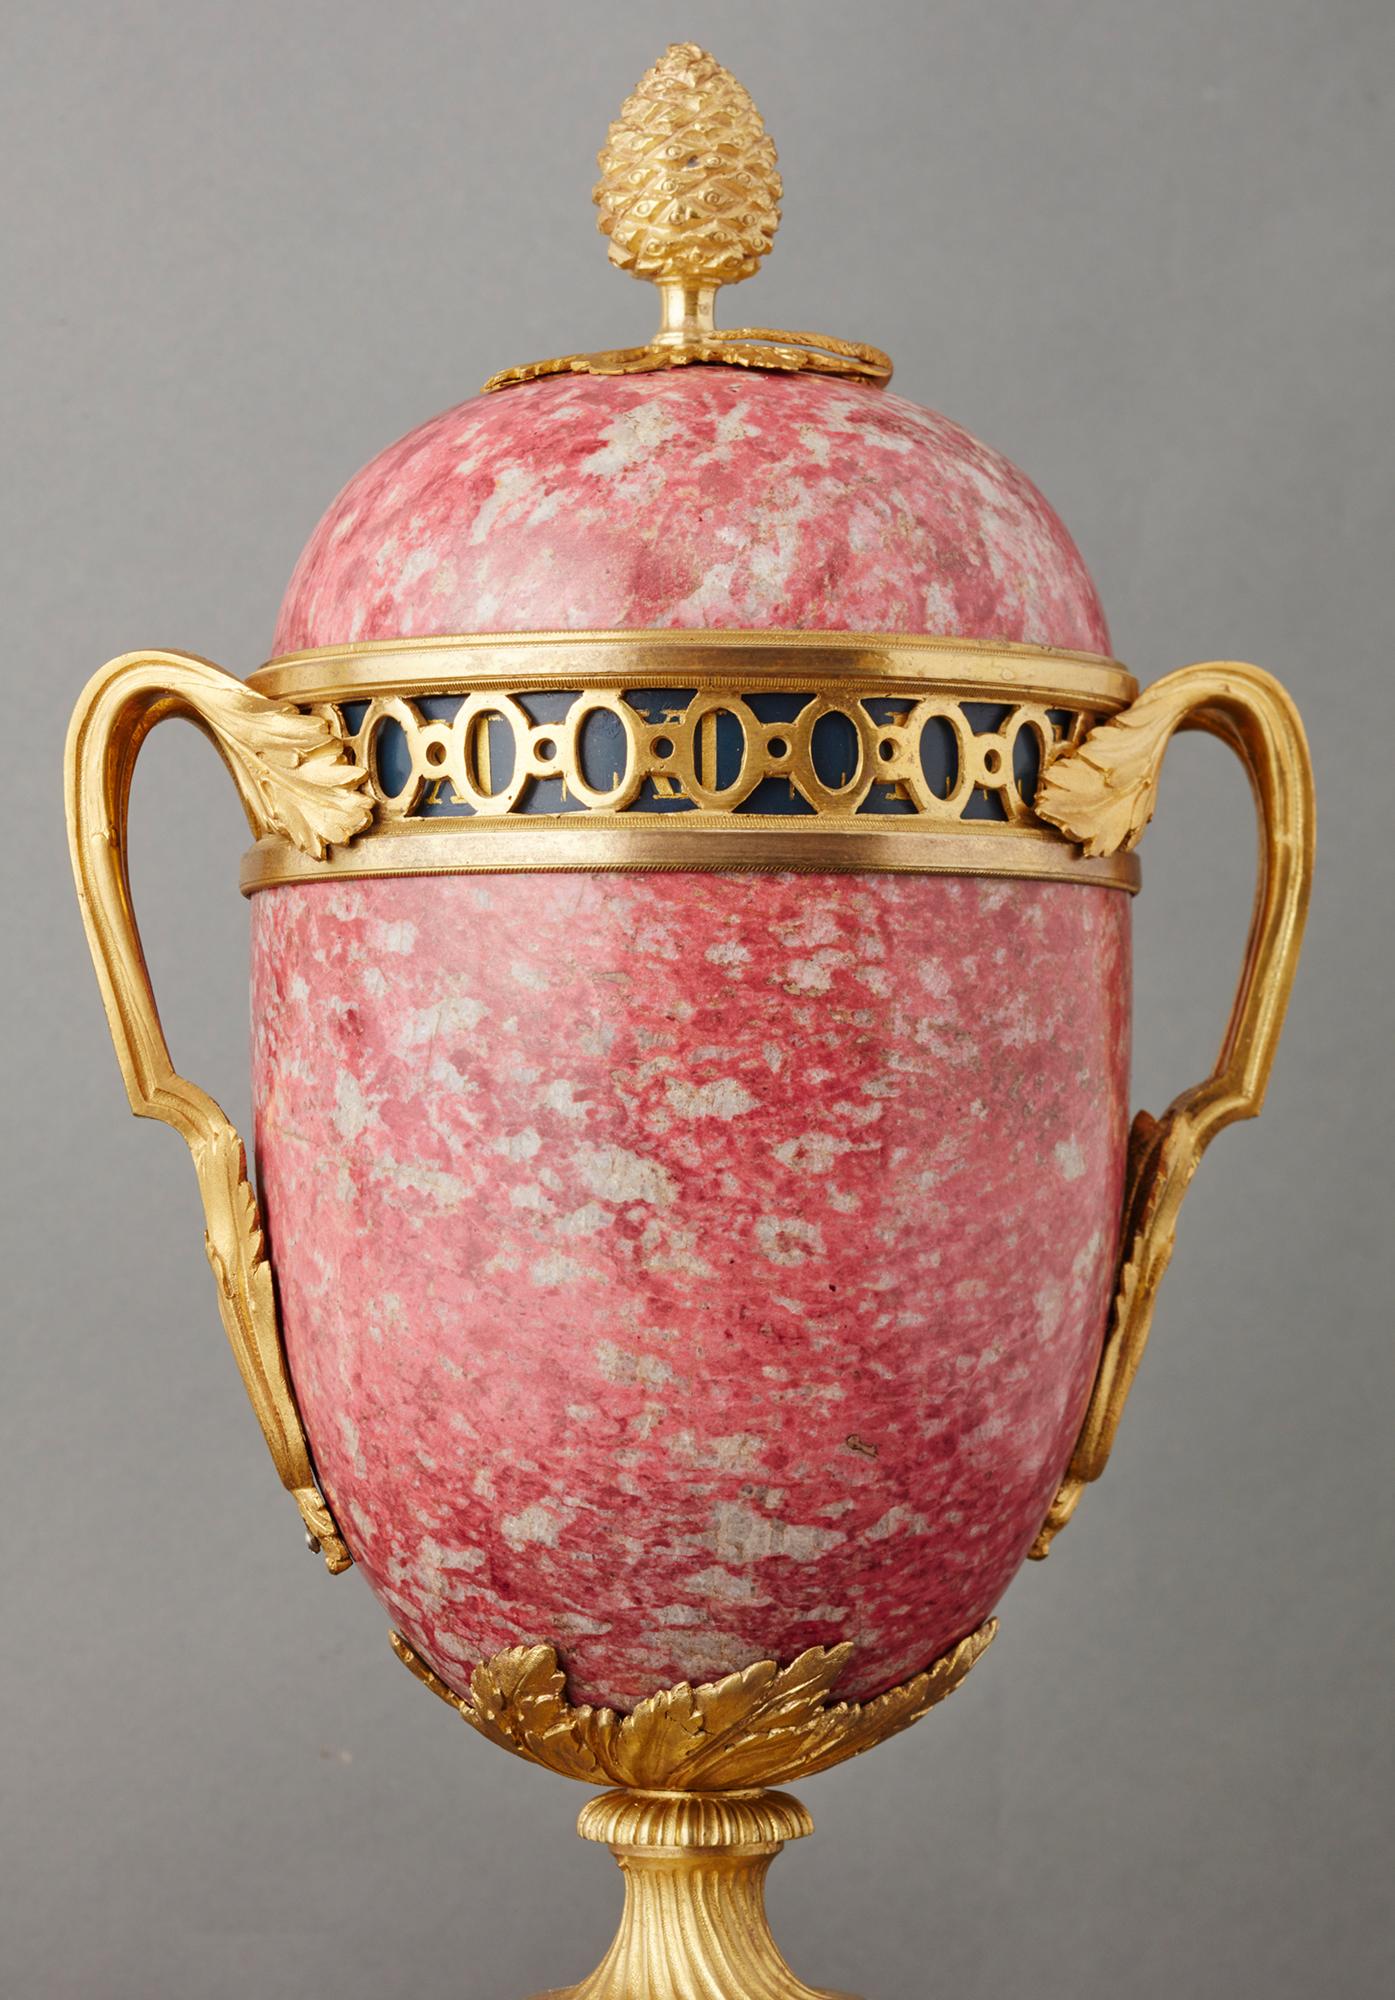 Eine ungewöhnliche rote Marmor / Rhodonit so genannte ringförmige Zifferblatt Französisch Urne Uhr um 1880.

Der ungewöhnliche Farbmarmor ist sehr selten und sehr dekorativ.

Die schönen Bronzebeschläge sind sehr Louis XVI inspiriert.

Oben in der